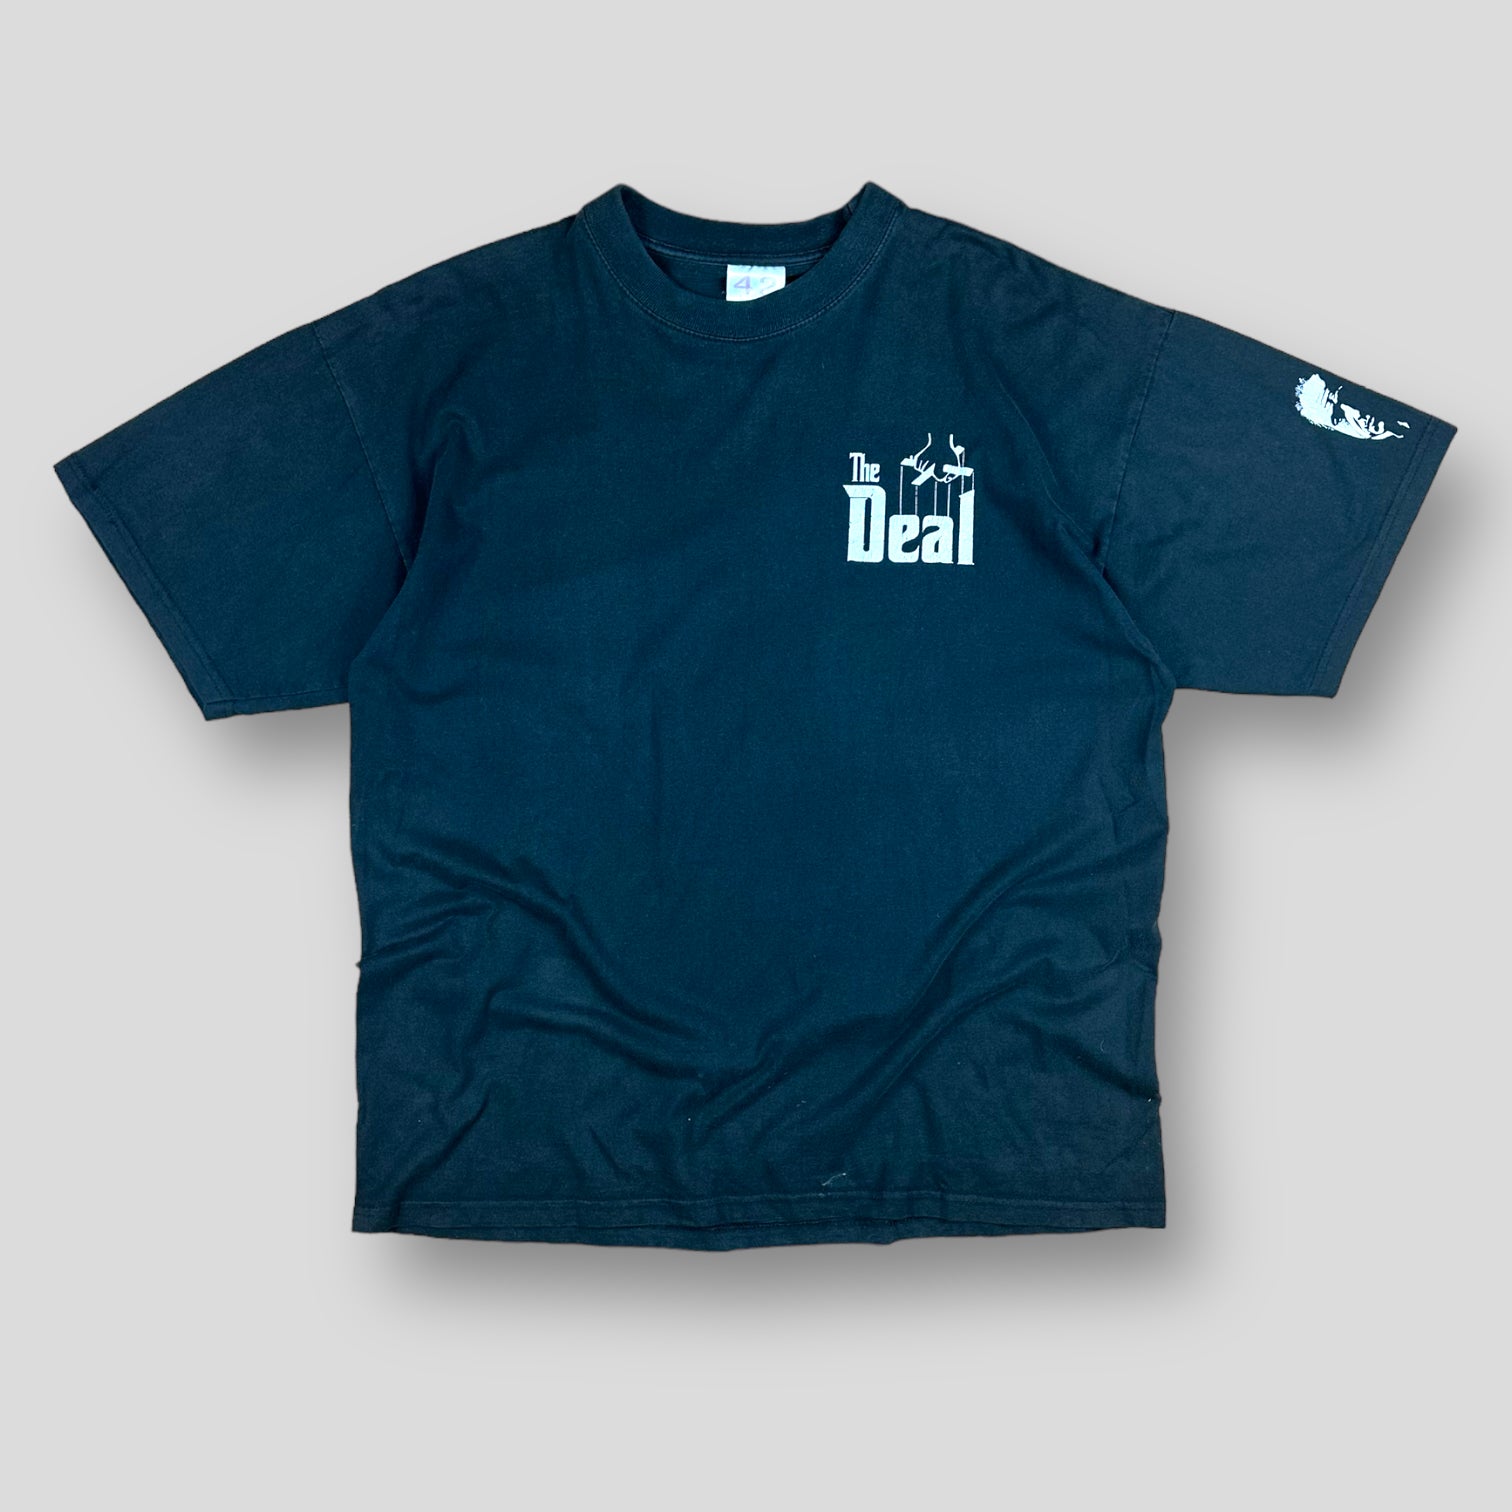 The Deal T-shirt